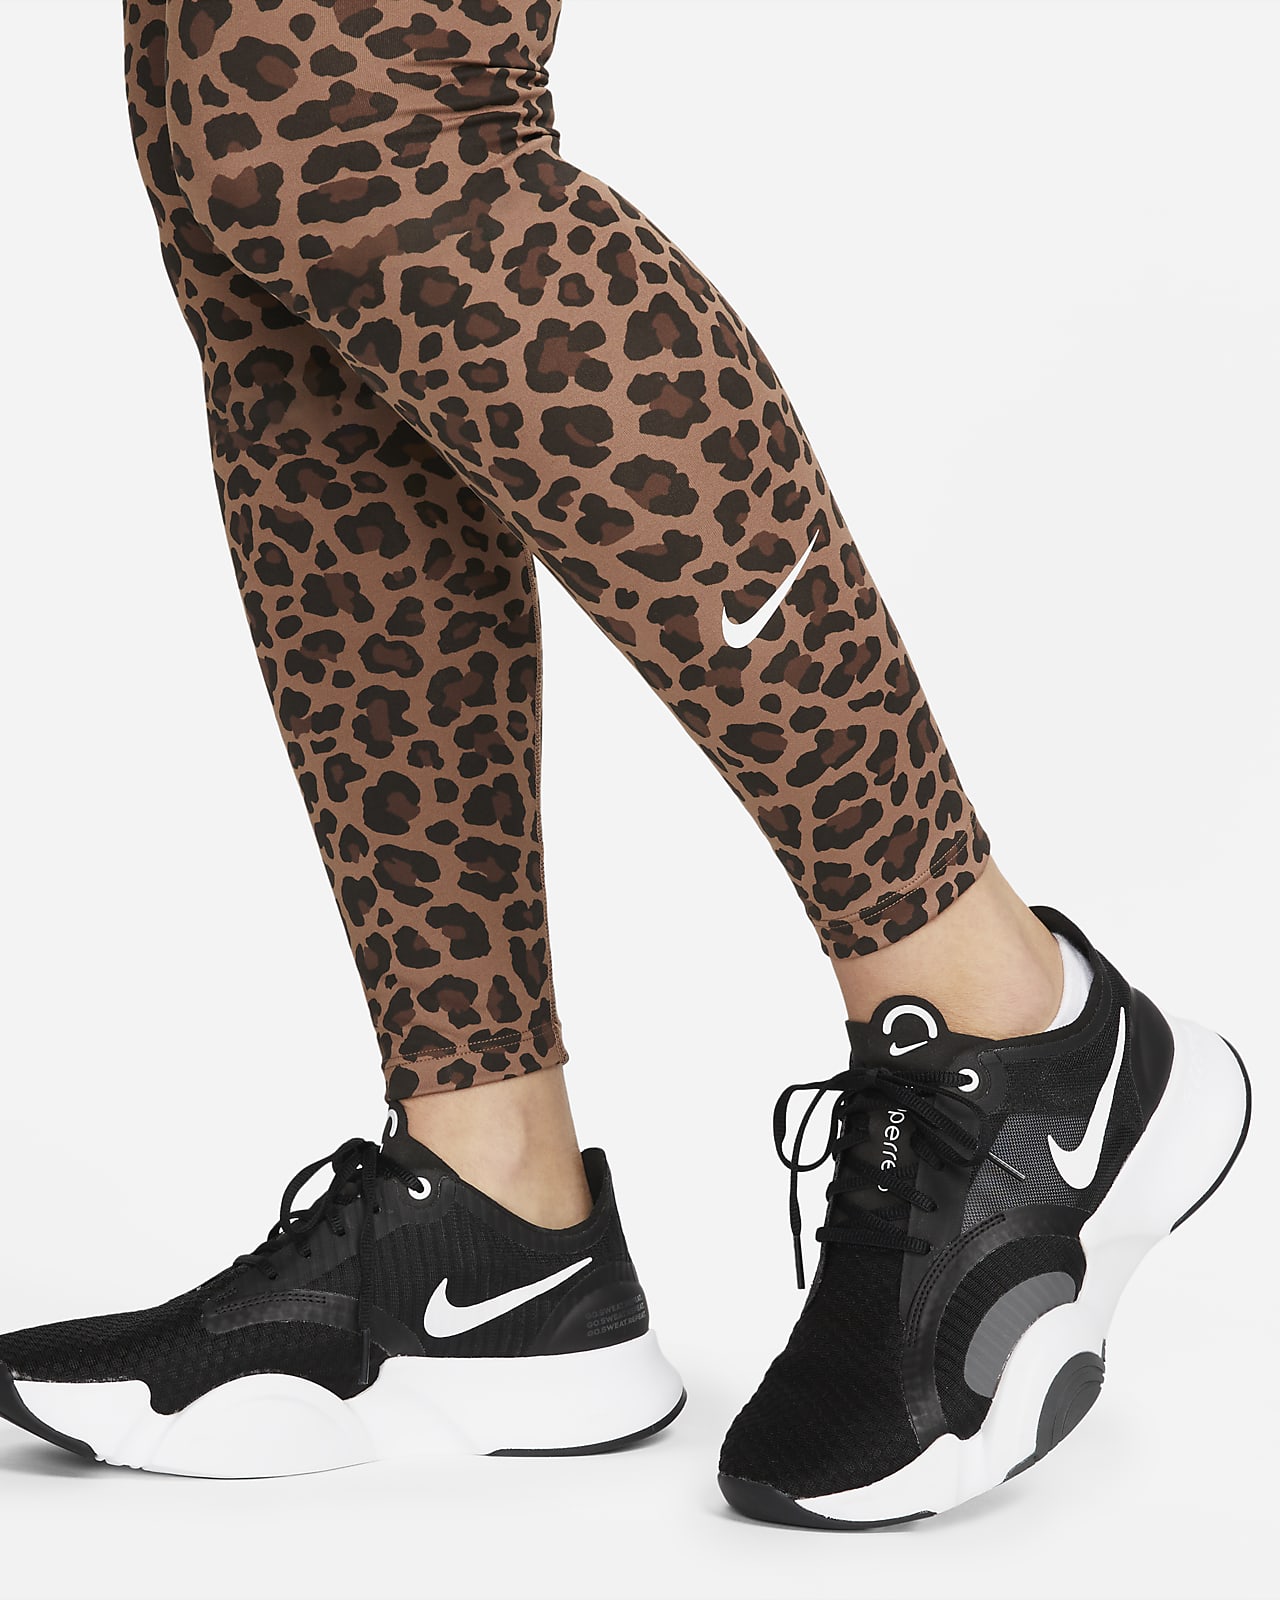 De Manoeuvreren huiswerk Nike One (M) Legging met hoge taille en luipaardprint voor dames ( zwangerschapskleding). Nike NL